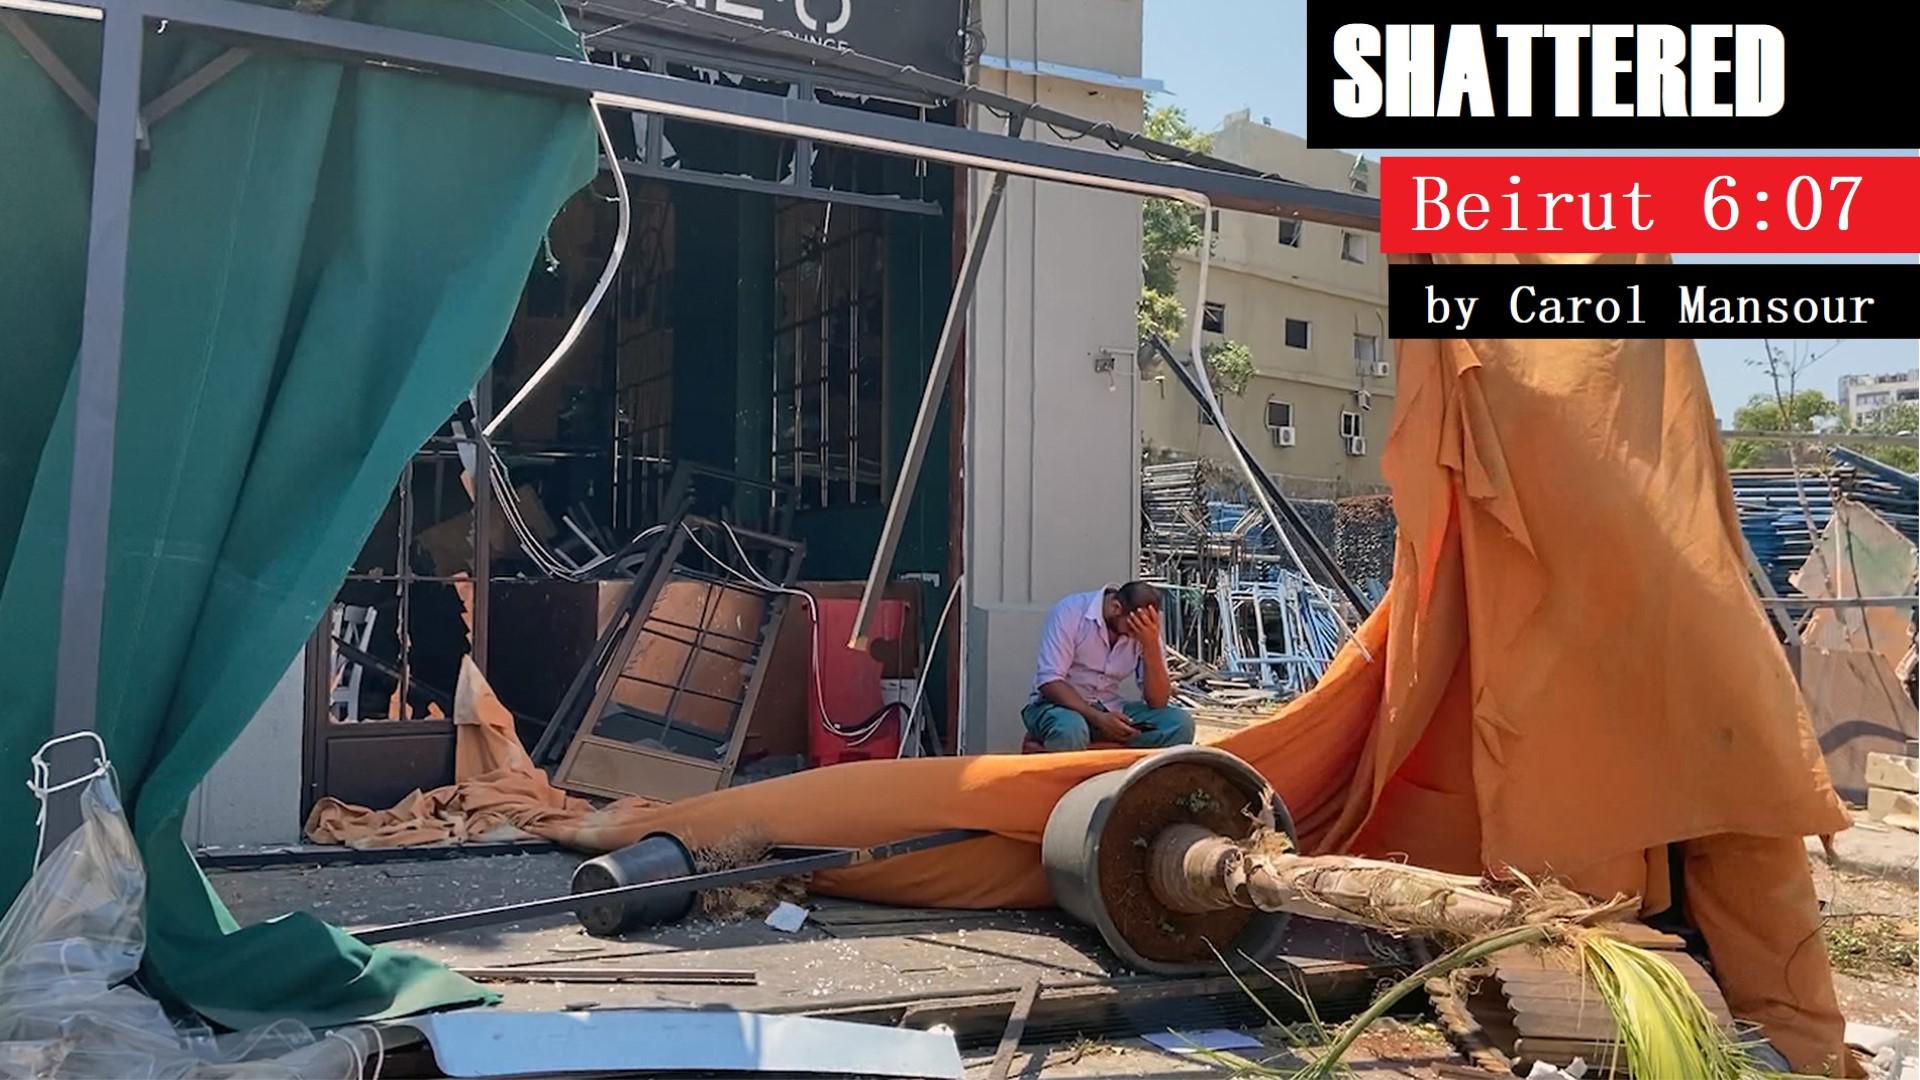 Shattered Beirut 6:07 